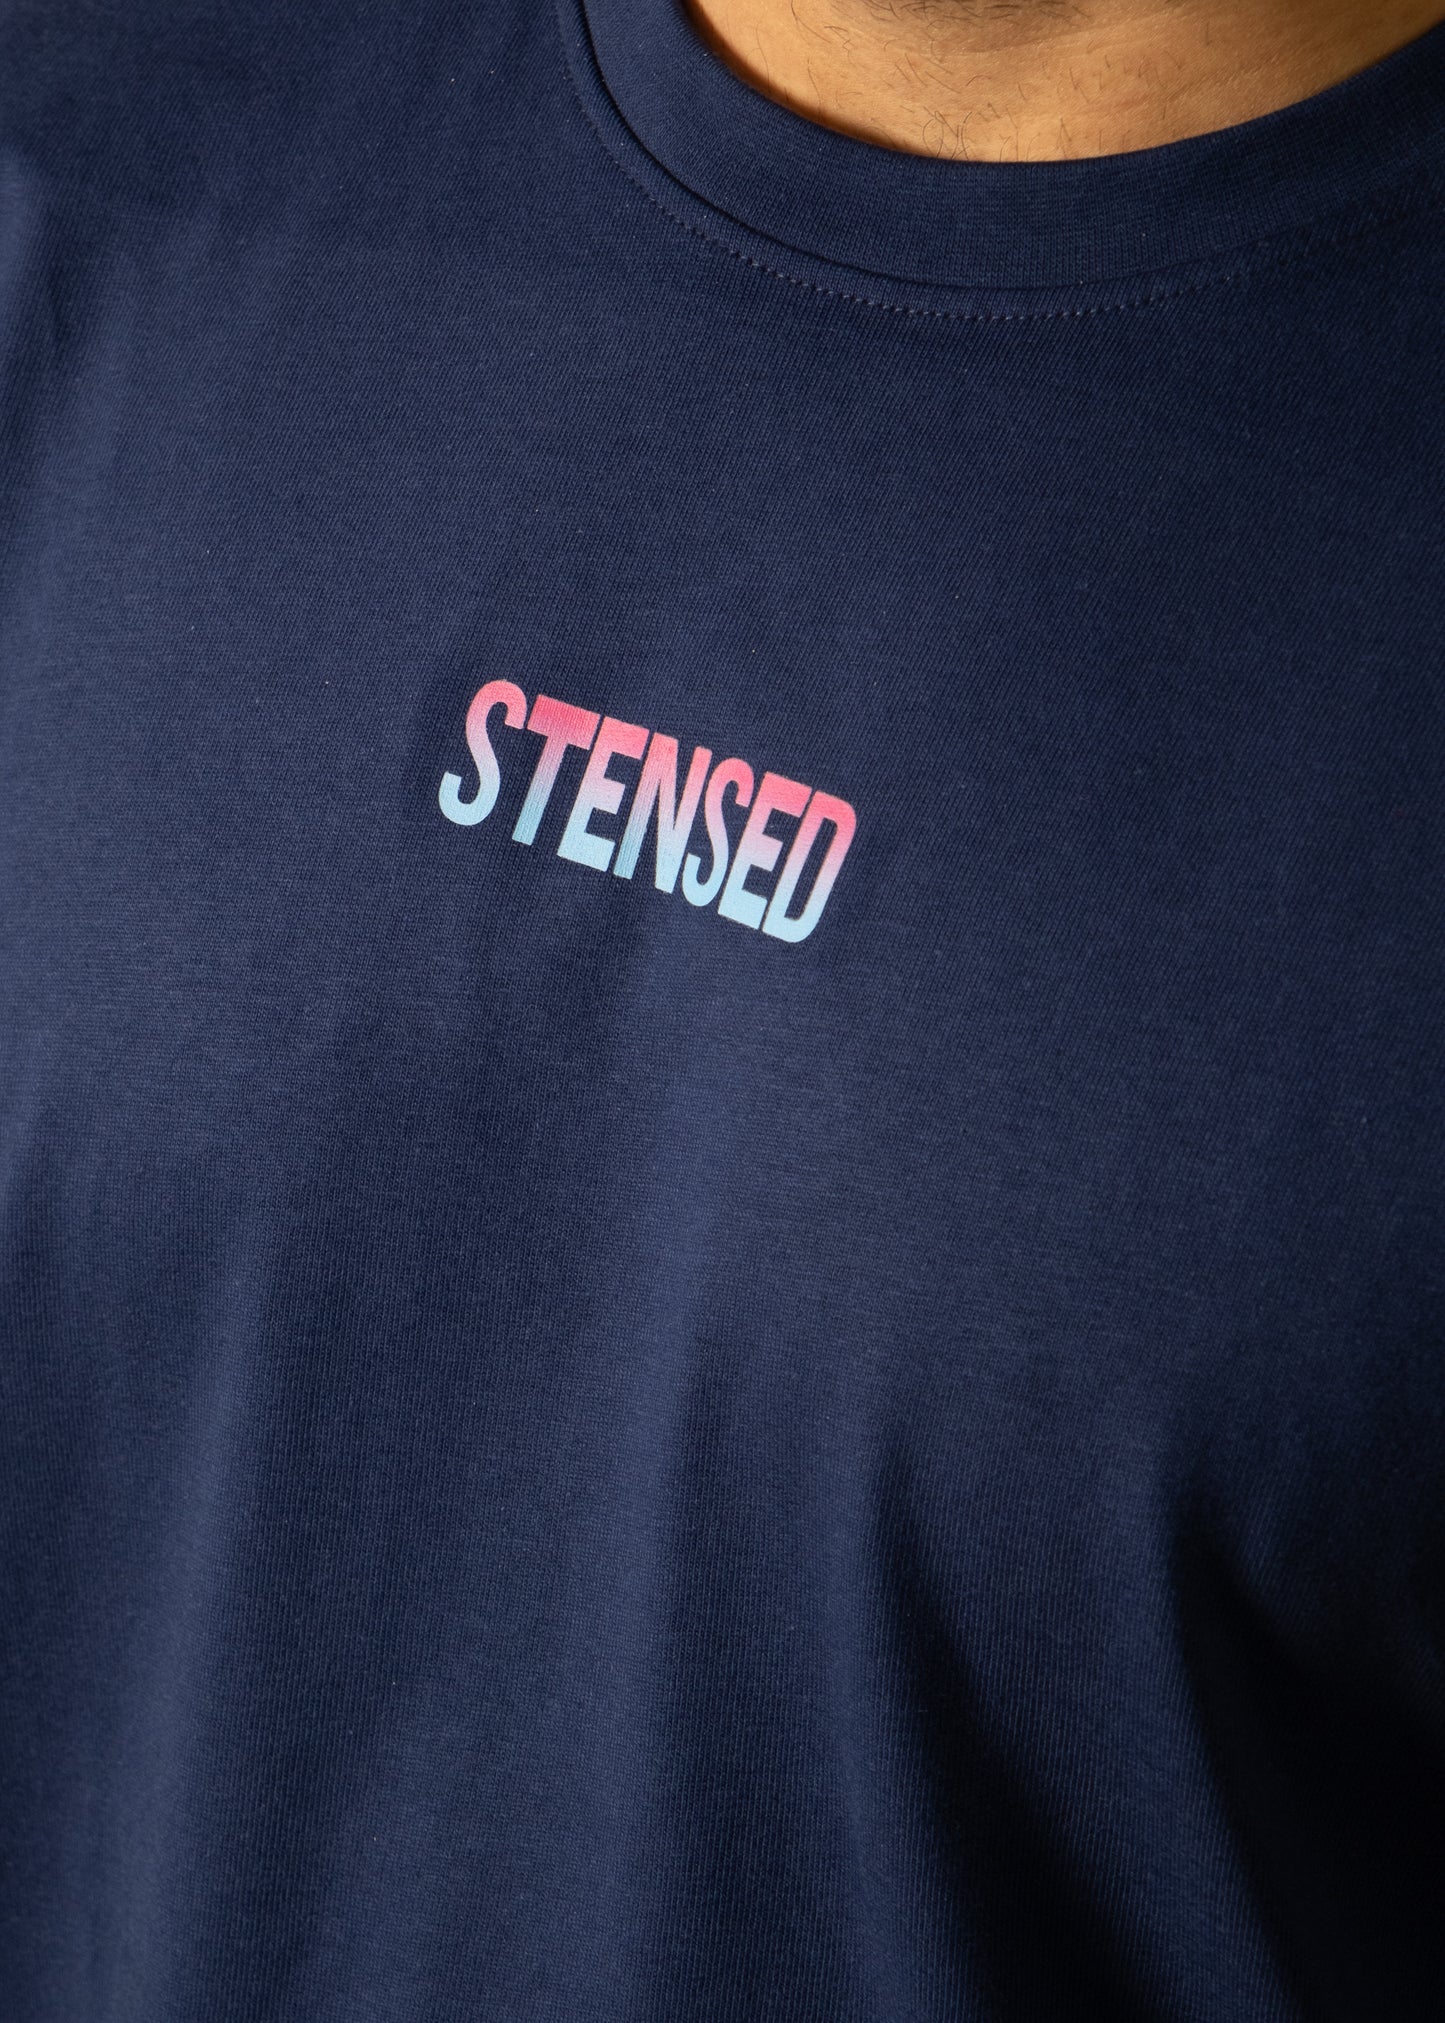 T-shirt STENSED WZA Édition limitée